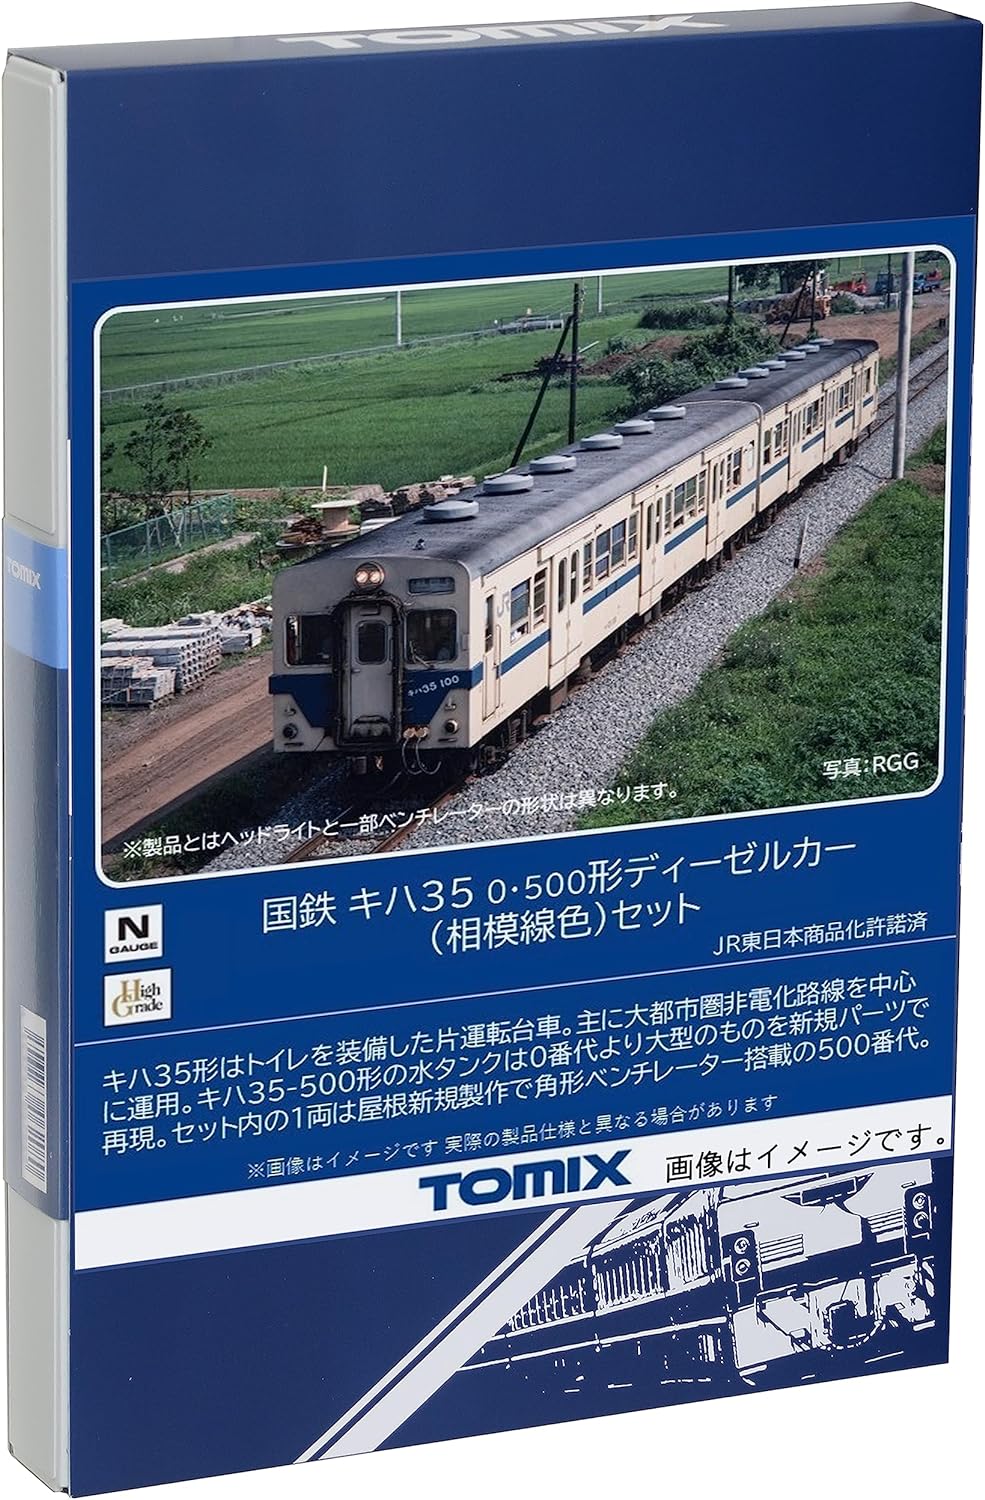 TOMIX 98130 N Gauge JNR Kiha 35 Model 0 500 Sagami Line Color Set Railway Model Diesel Car - BanzaiHobby